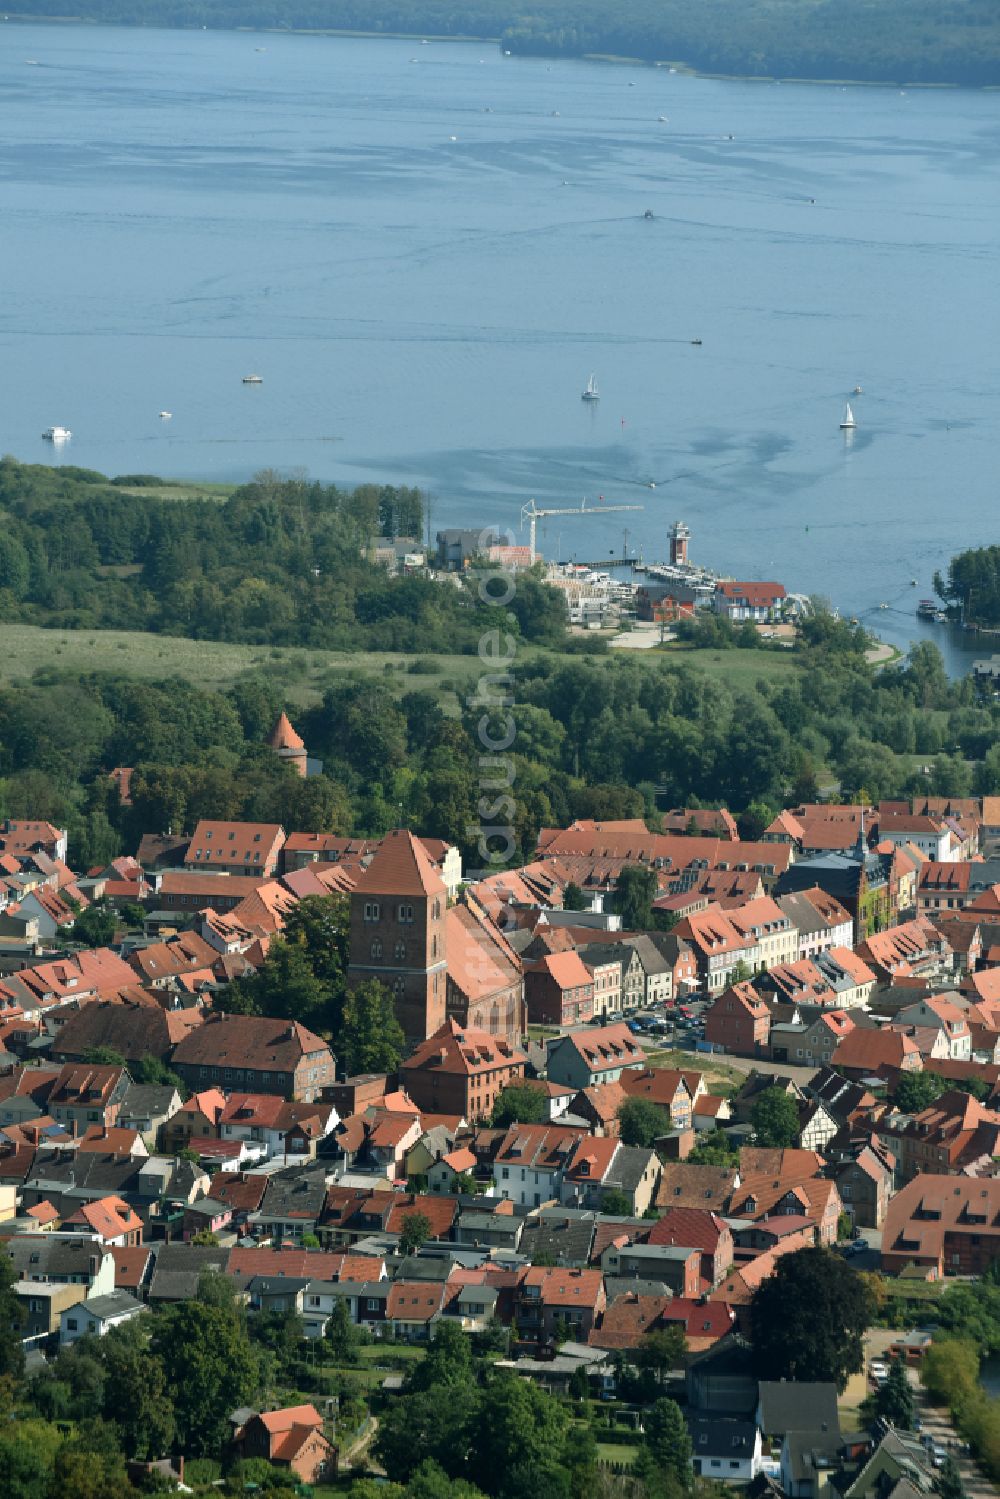 Plau am See von oben - Stadtzentrum im Innenstadtbereich in Plau am See im Bundesland Mecklenburg-Vorpommern, Deutschland